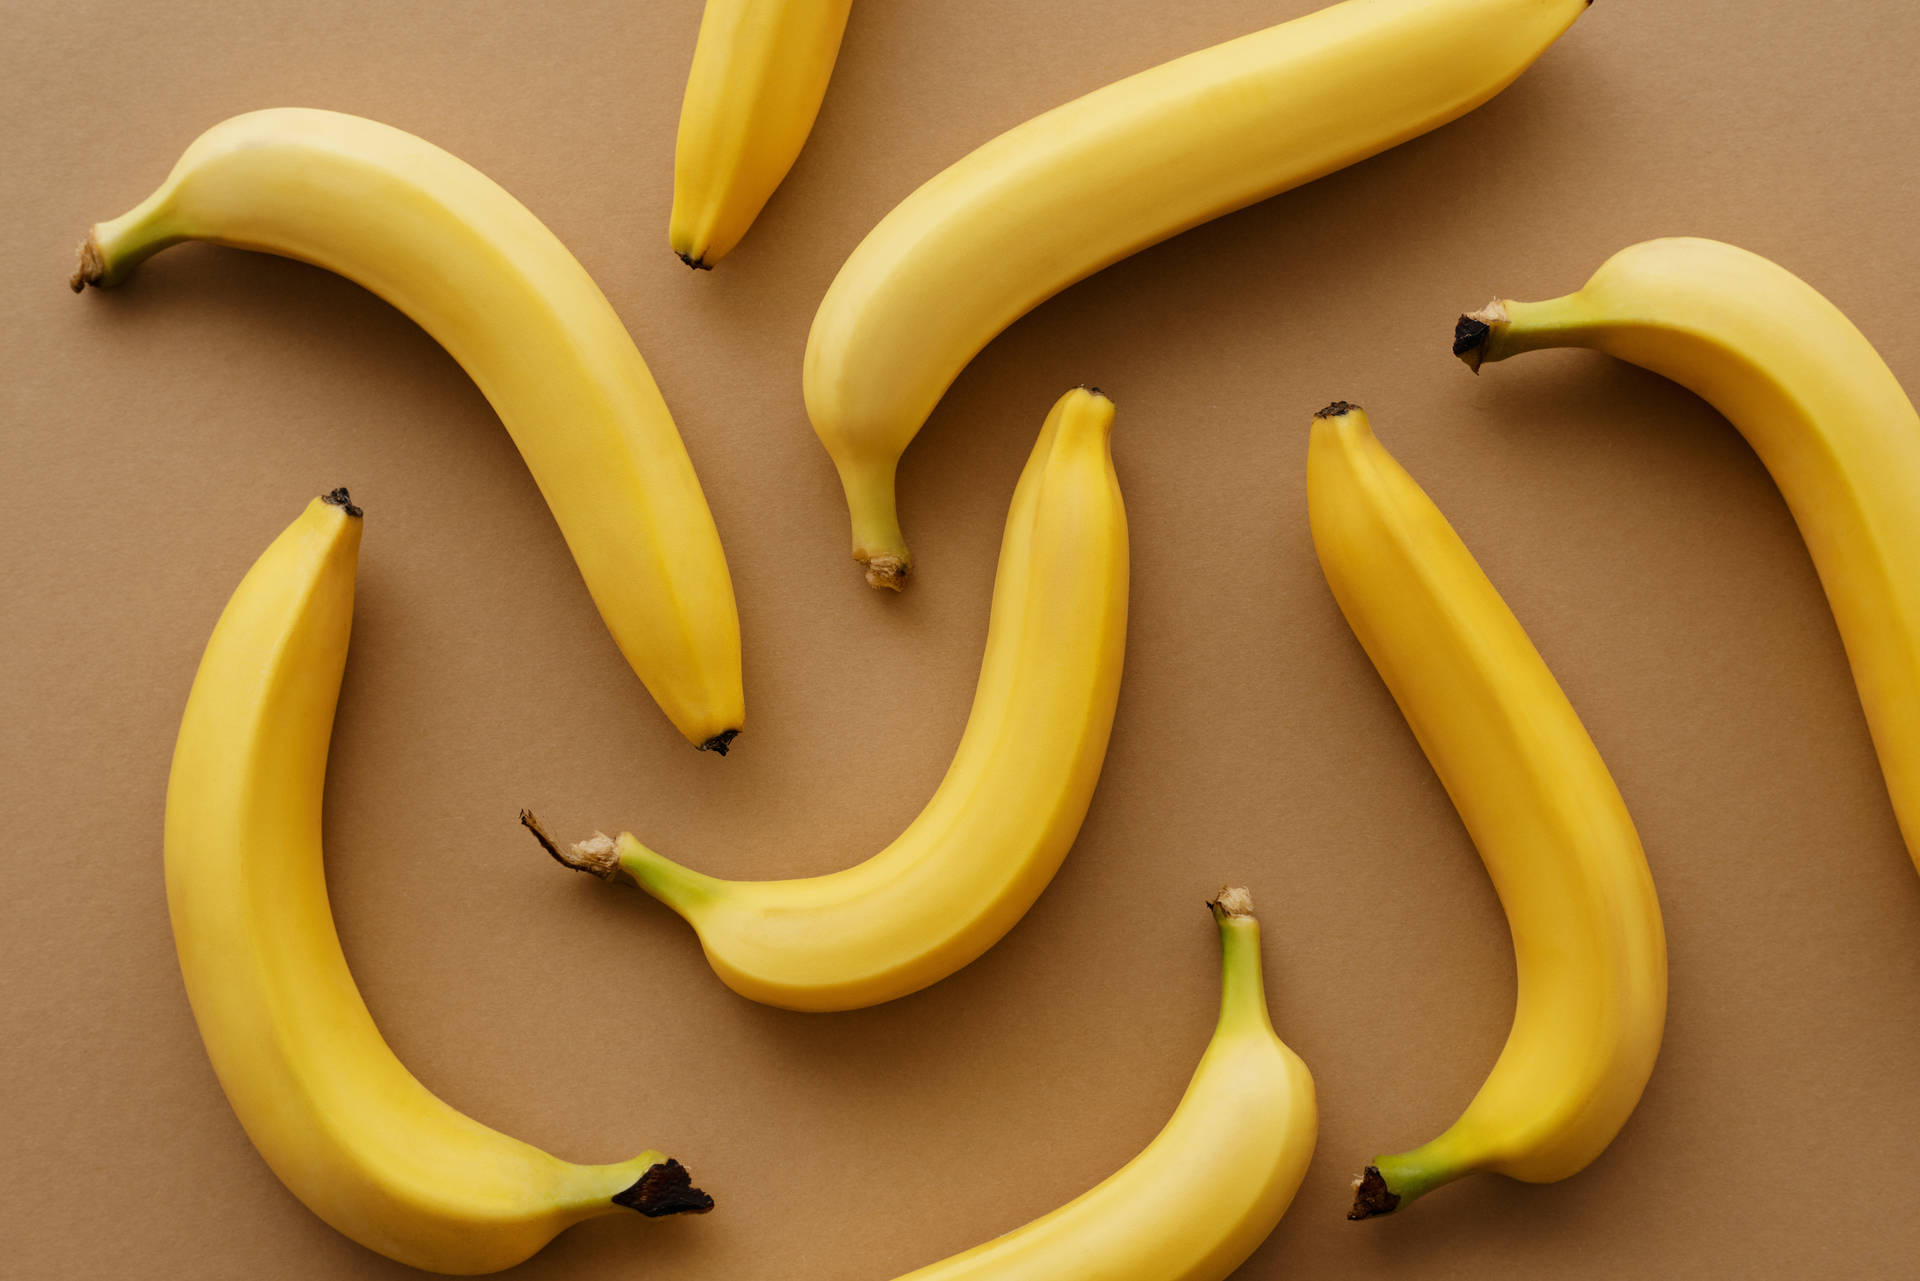 Scatterde gule bananer for en legende udseende. Wallpaper